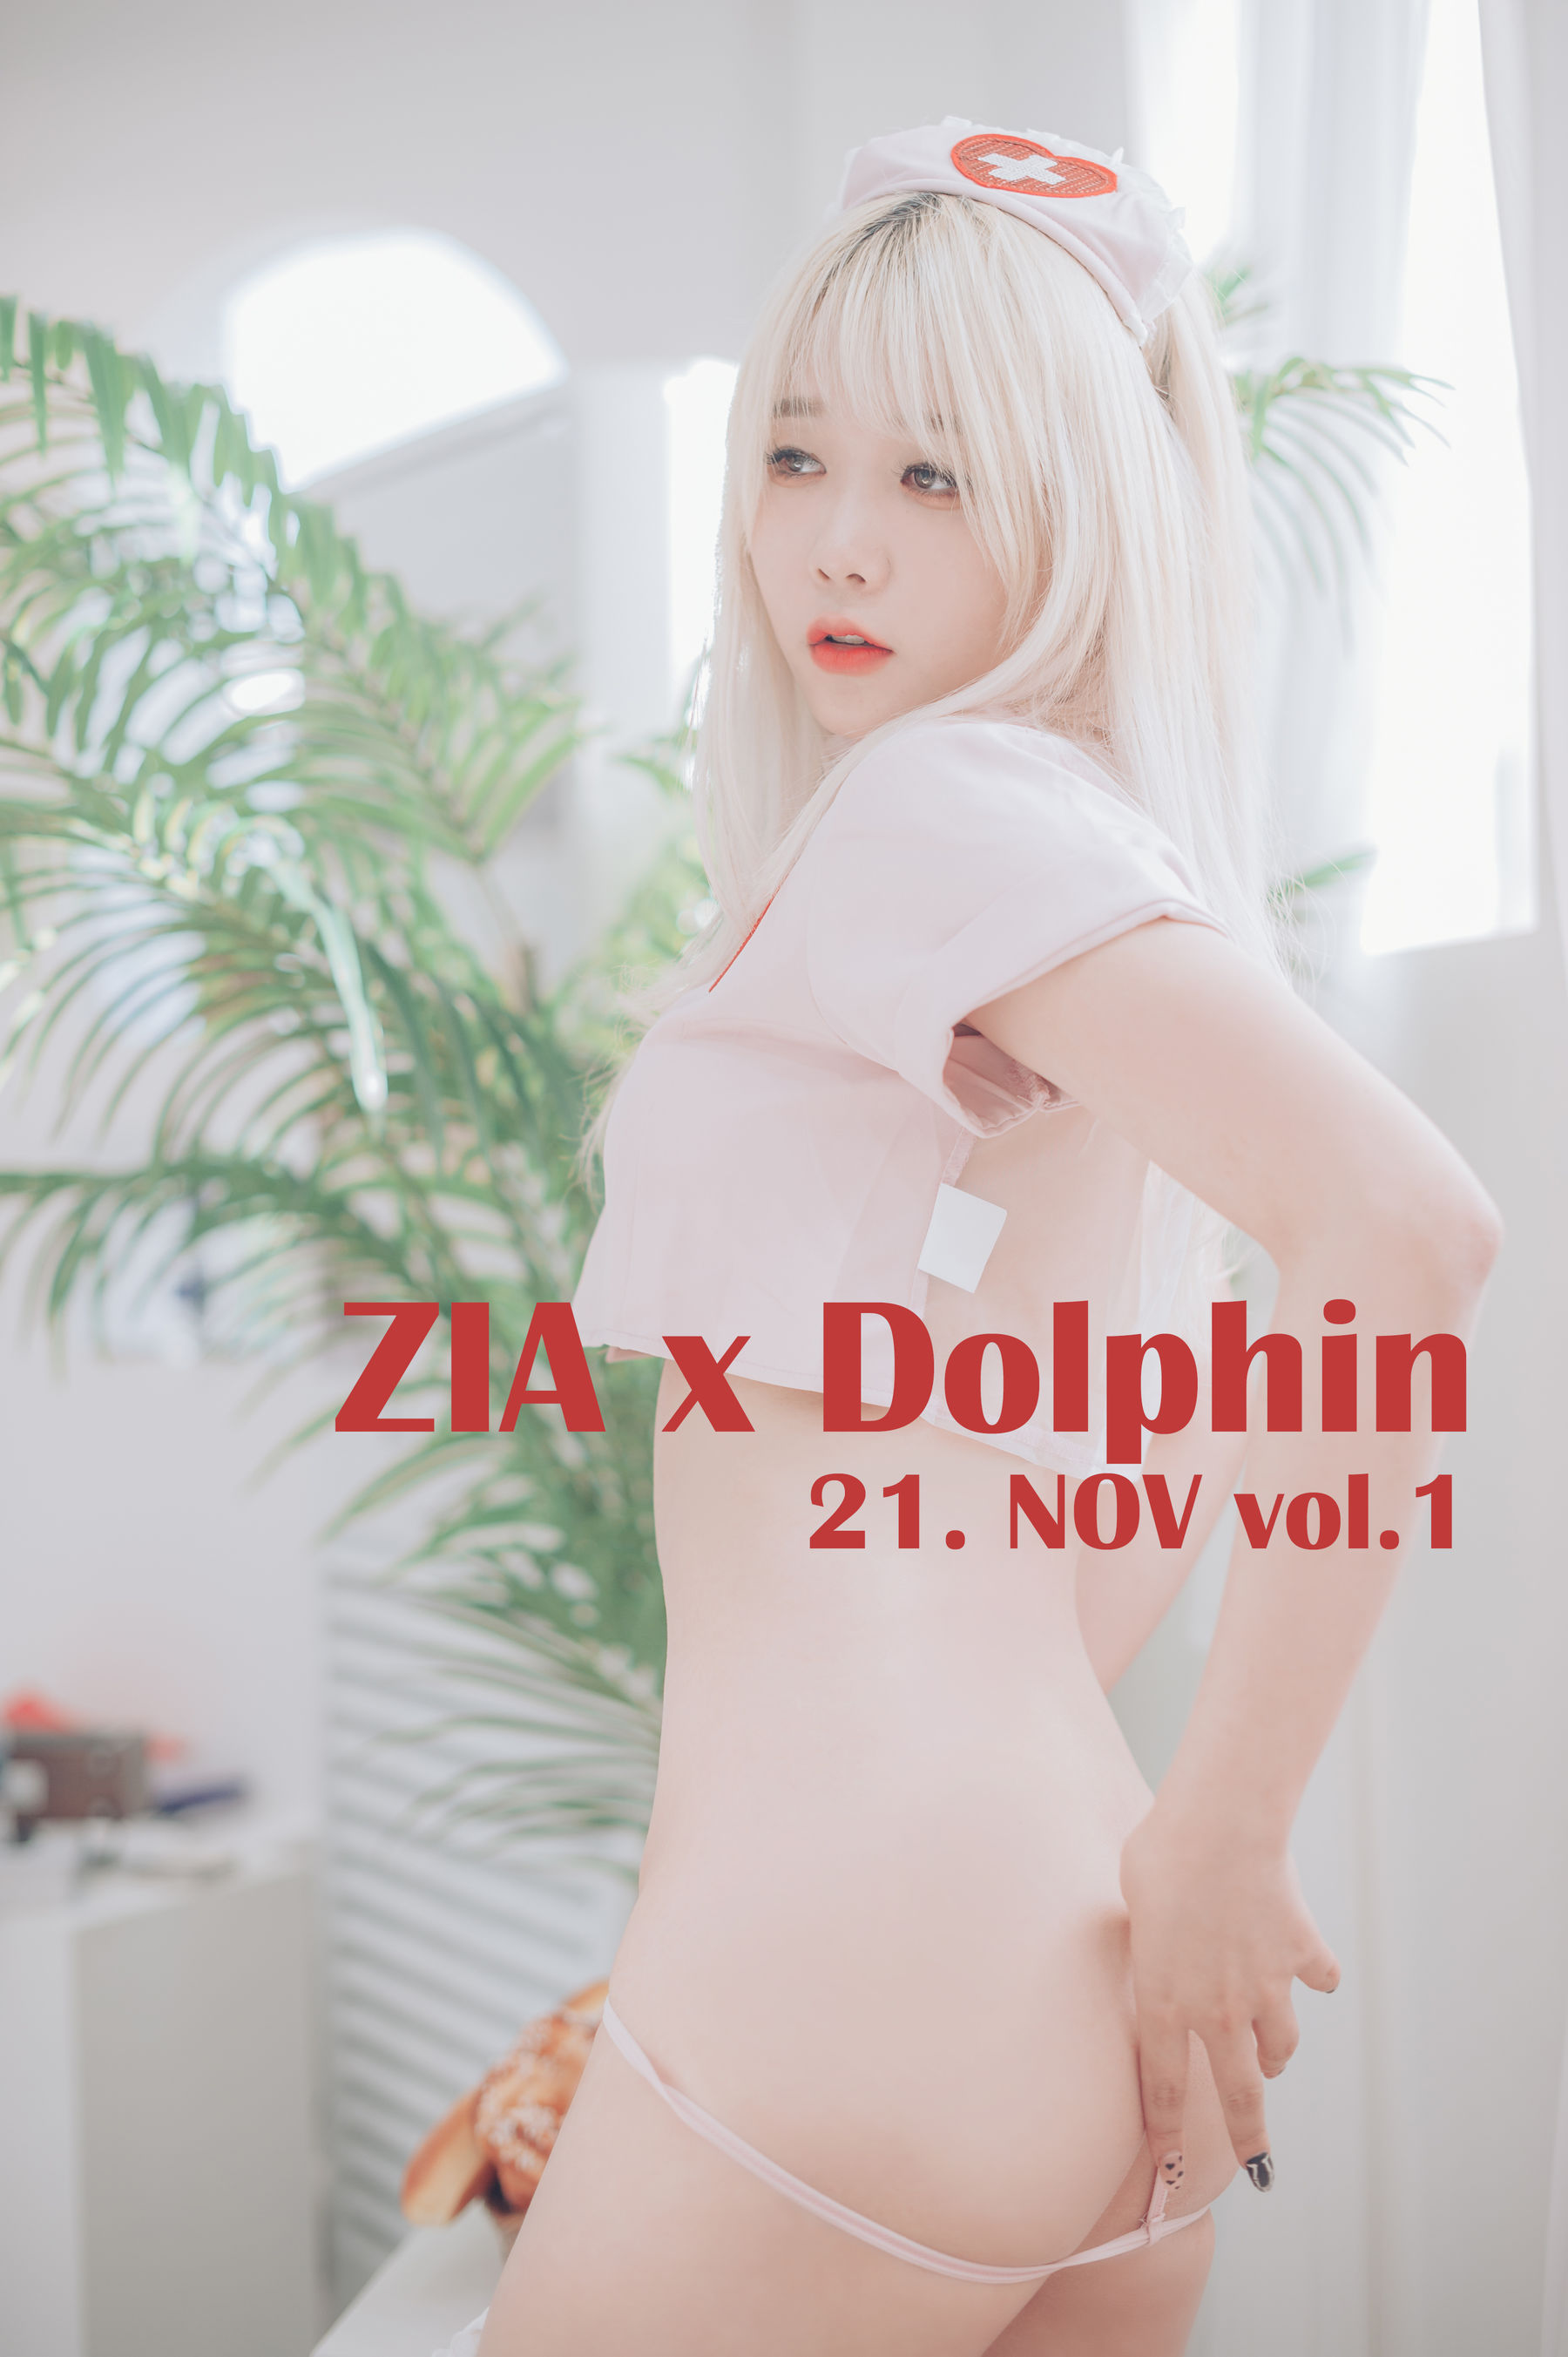 [JOApictures] Zia x DOLPHIN 21. NOV Vol.11